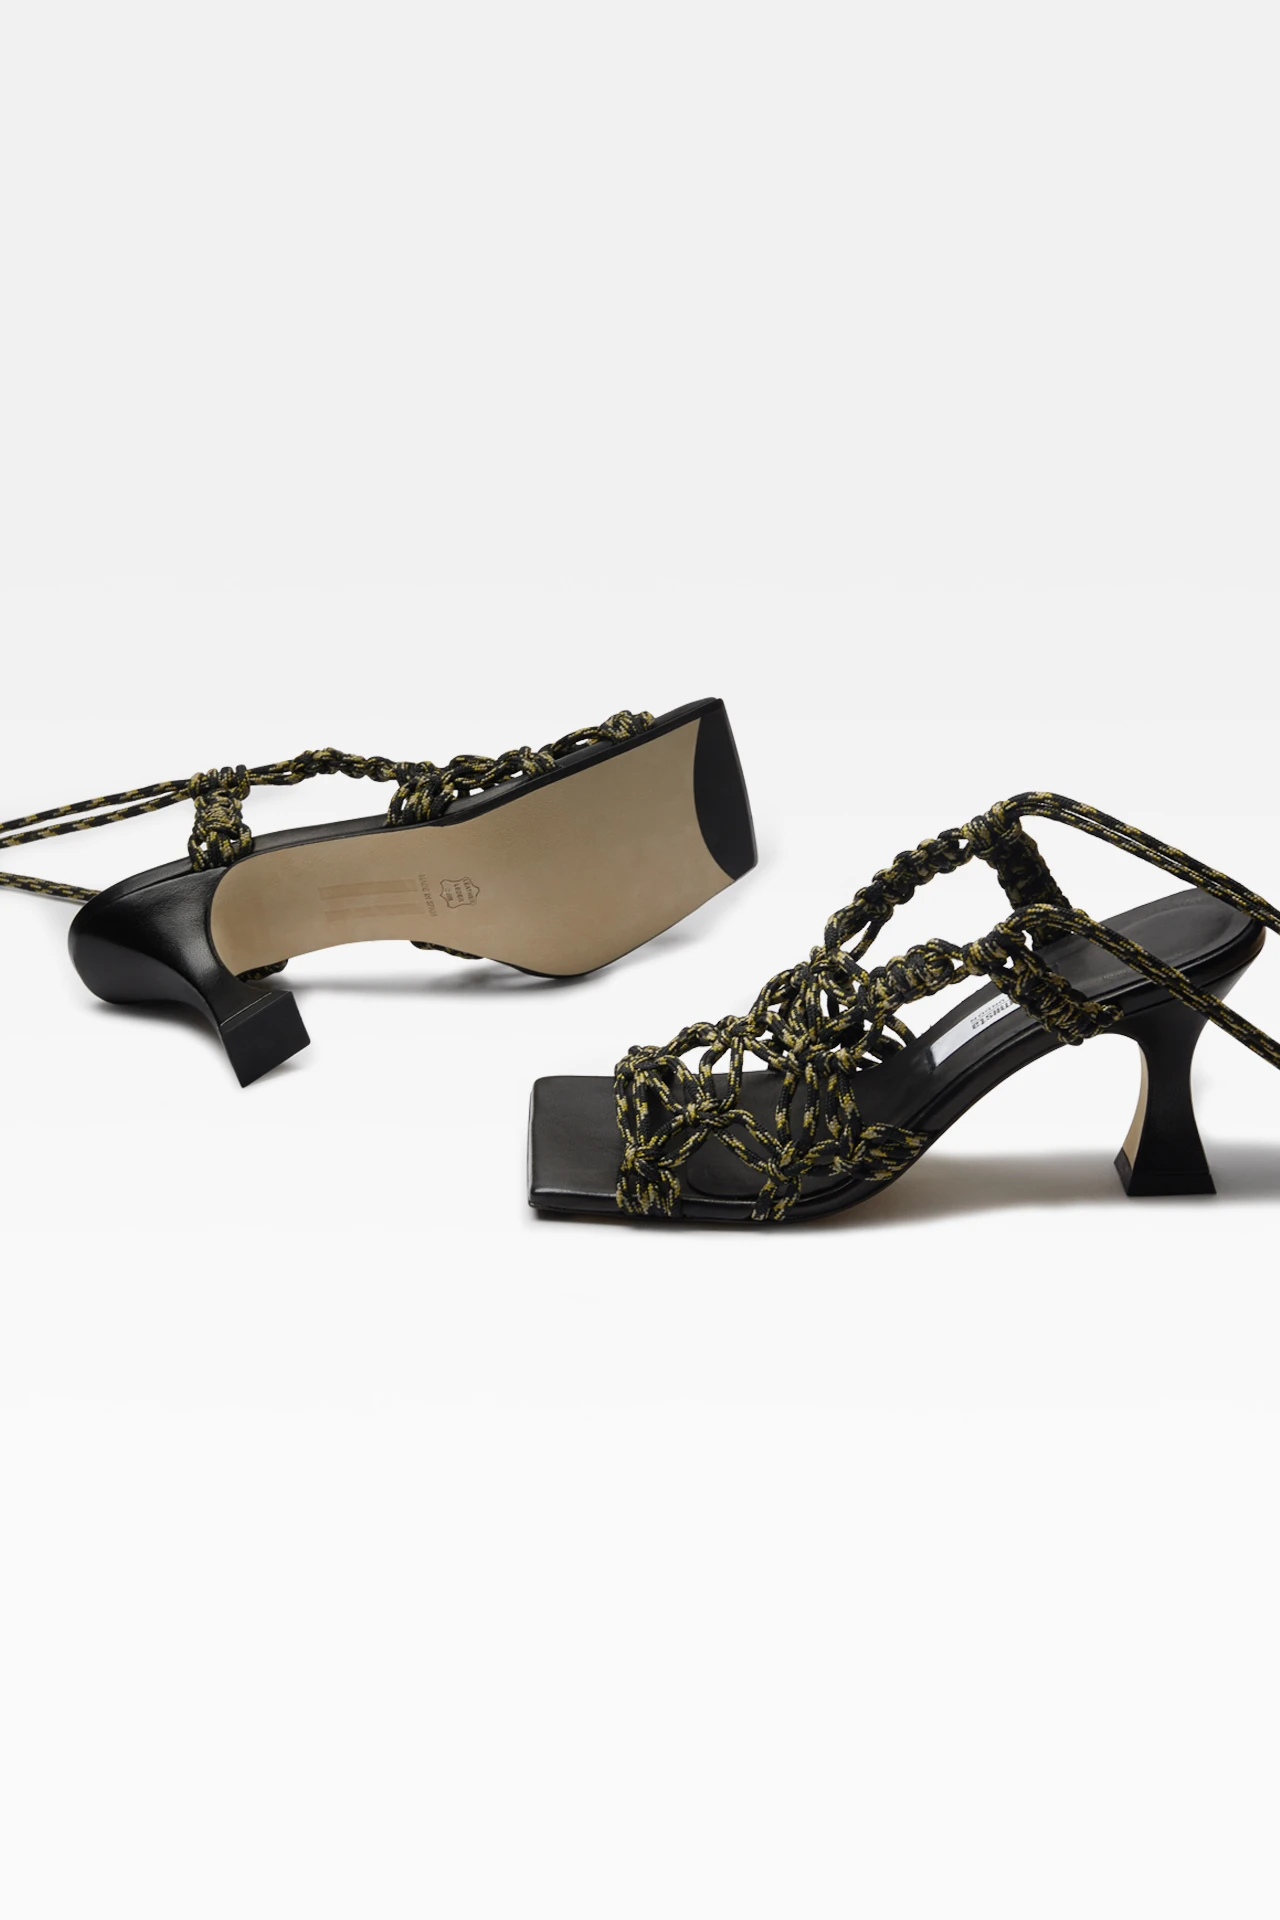 miista-stephanie-black-multi-heels-2